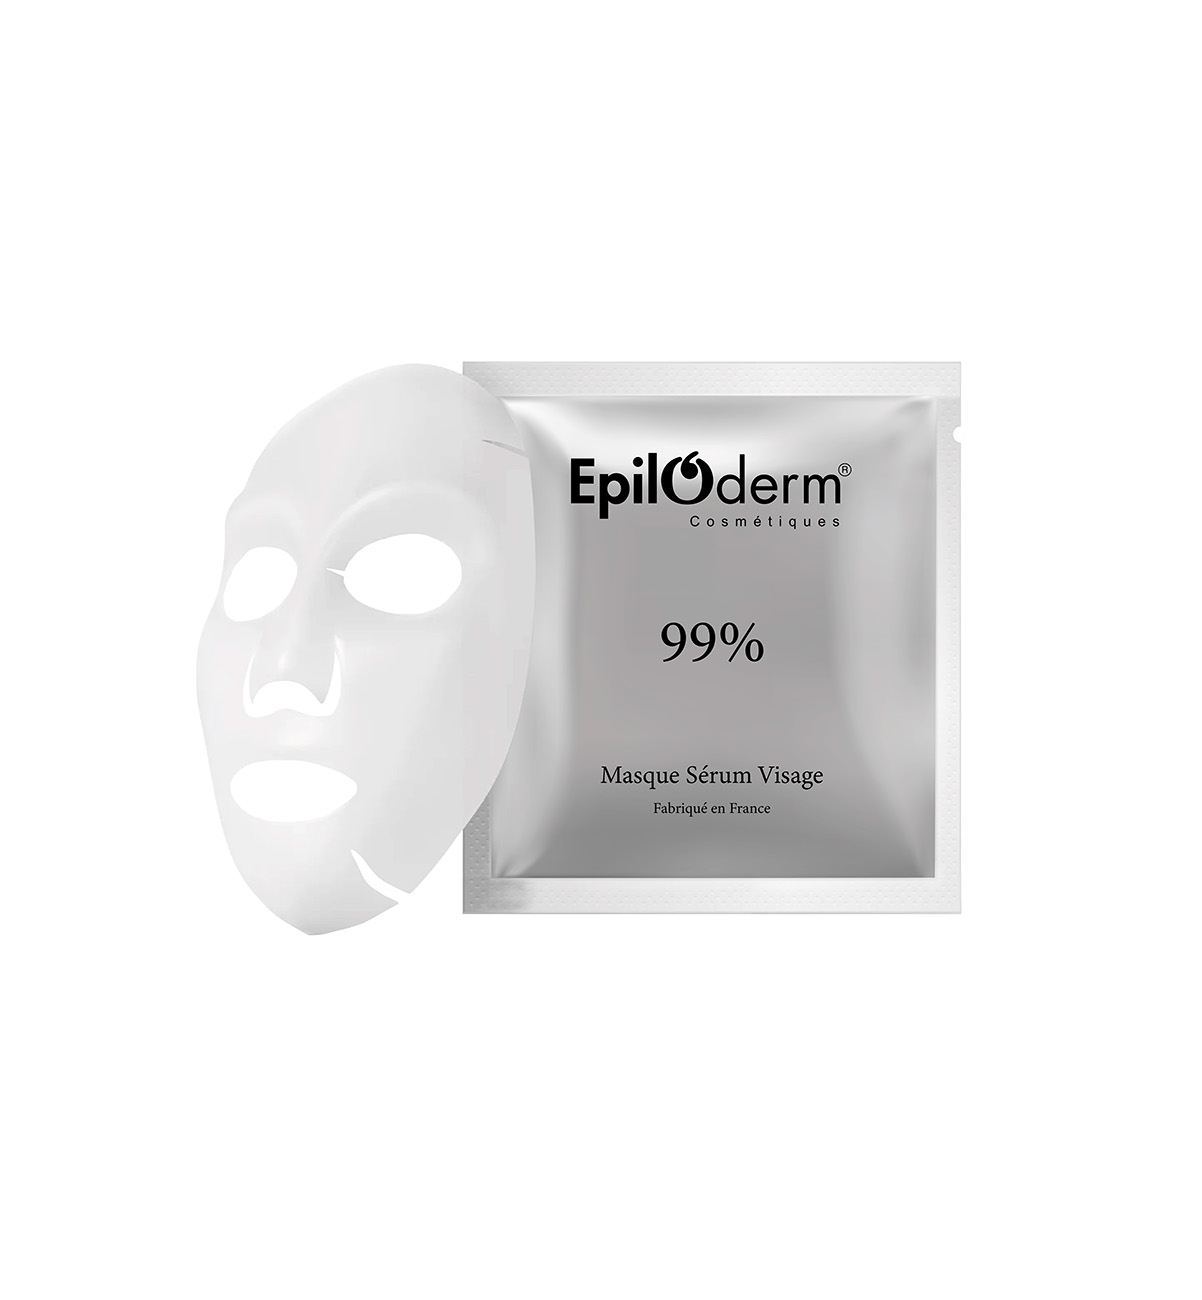 Masque Visage Epiloderm 99%